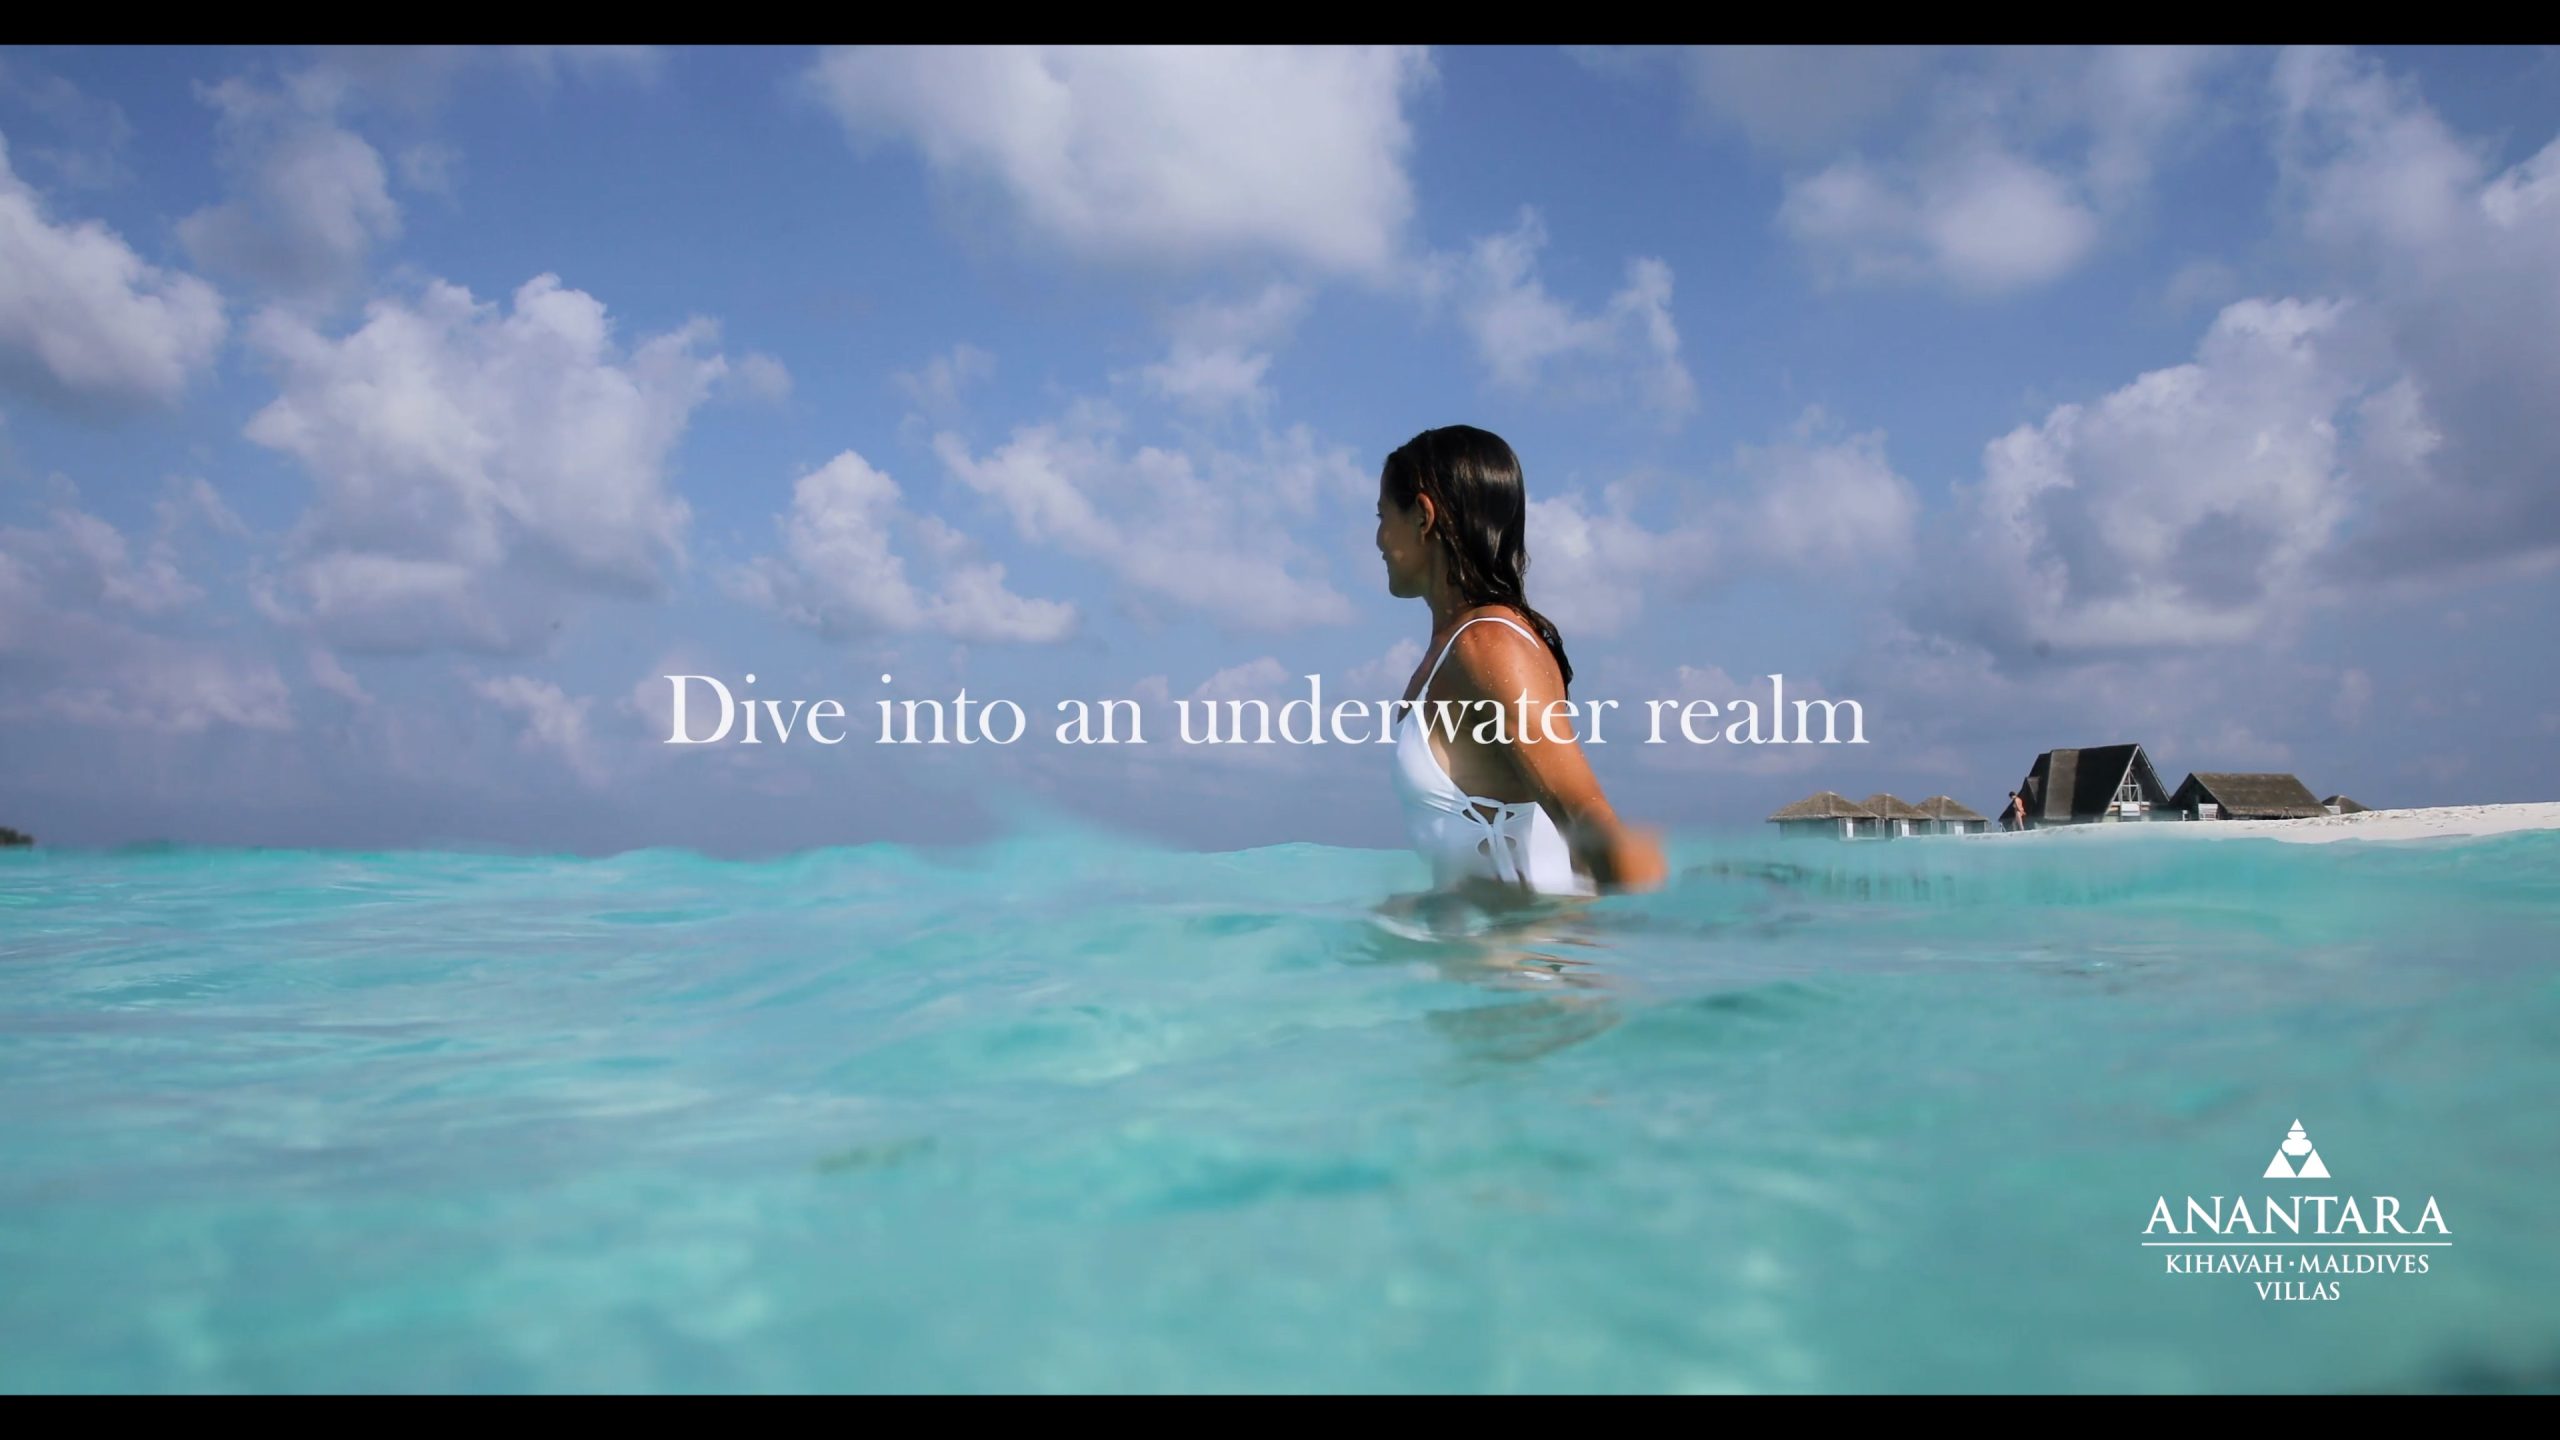 Anantara Kihavah Maldives Villas Resort - Baa Atoll, Maldives - Dive Into An Underwater Realm